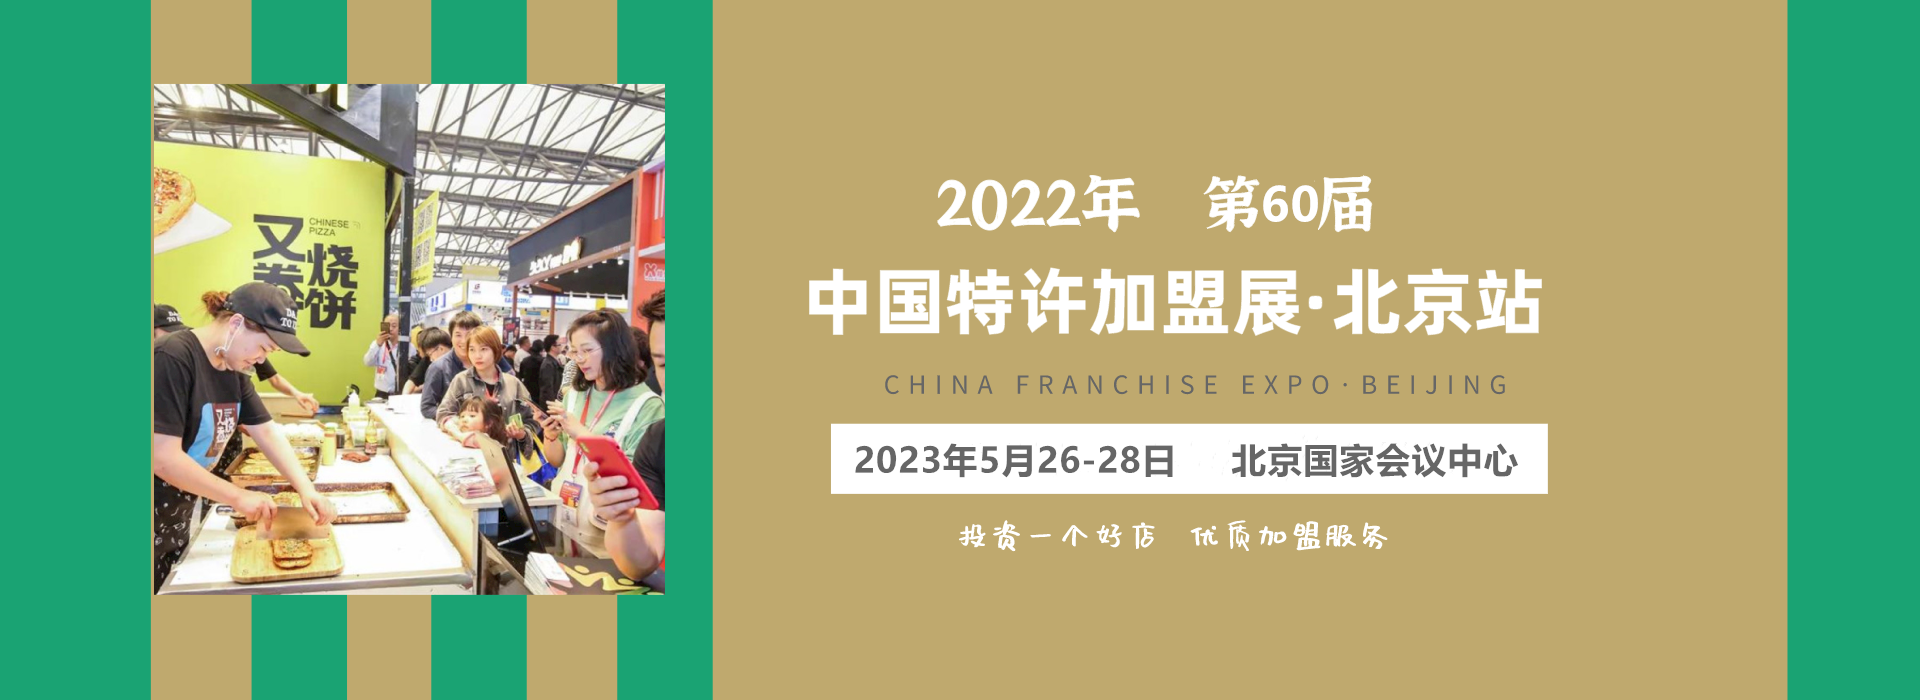 2023北京特许加盟展时间地点